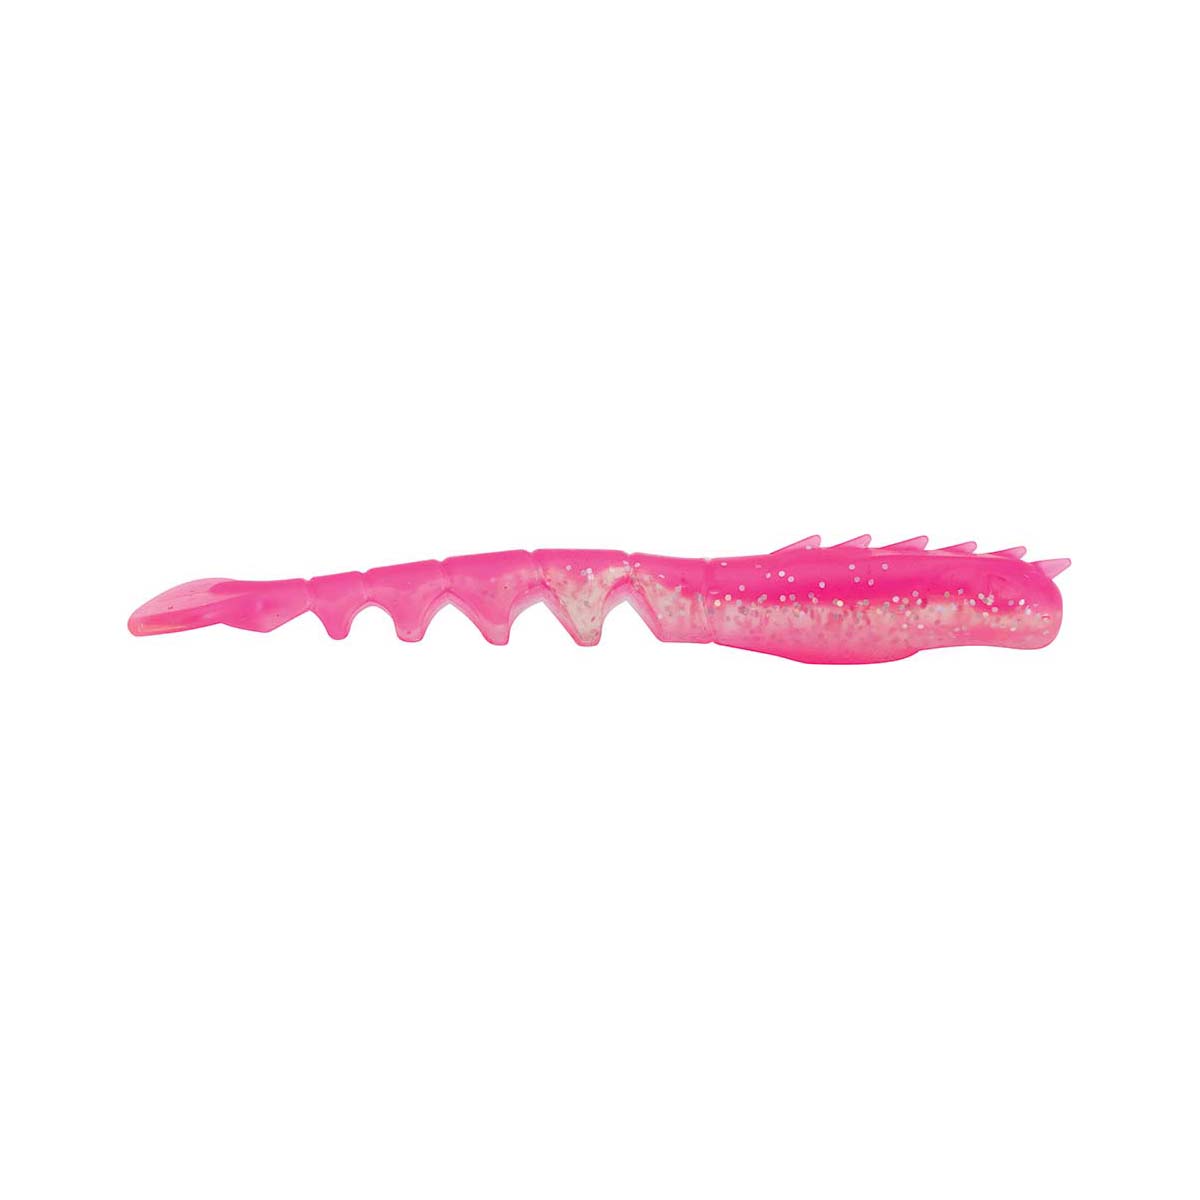 Berkley PowerBait Fan Tail Shrimp Soft Plastic Lure 2in Pink Glitter